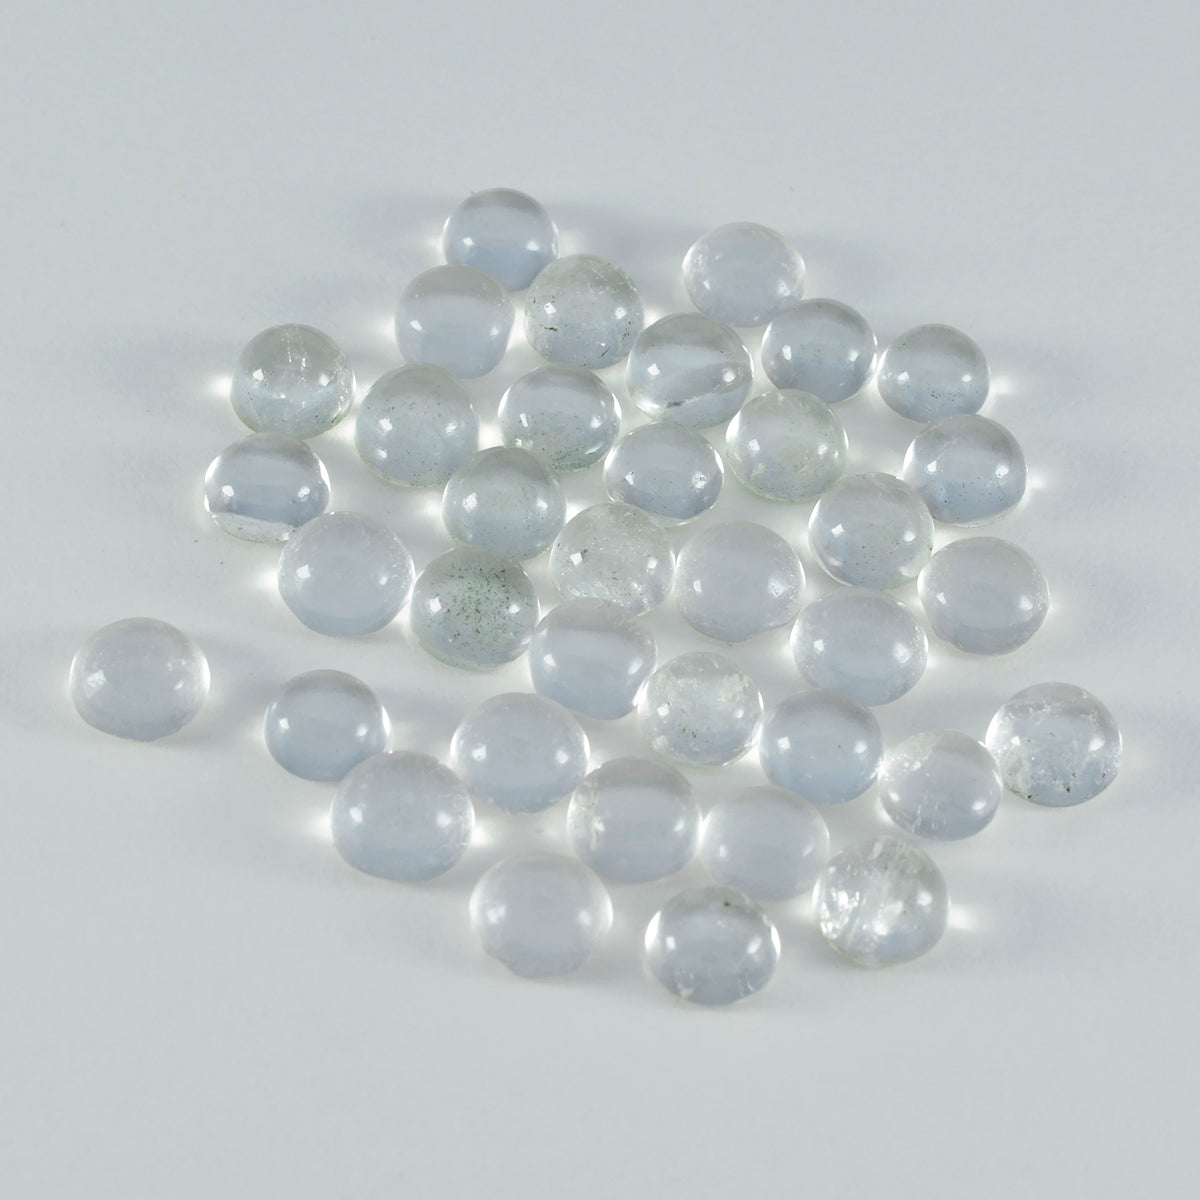 Riyogems 1 cabujón de cuarzo de cristal blanco de 0.236 x 0.236 in, forma redonda, calidad A+, piedra preciosa suelta